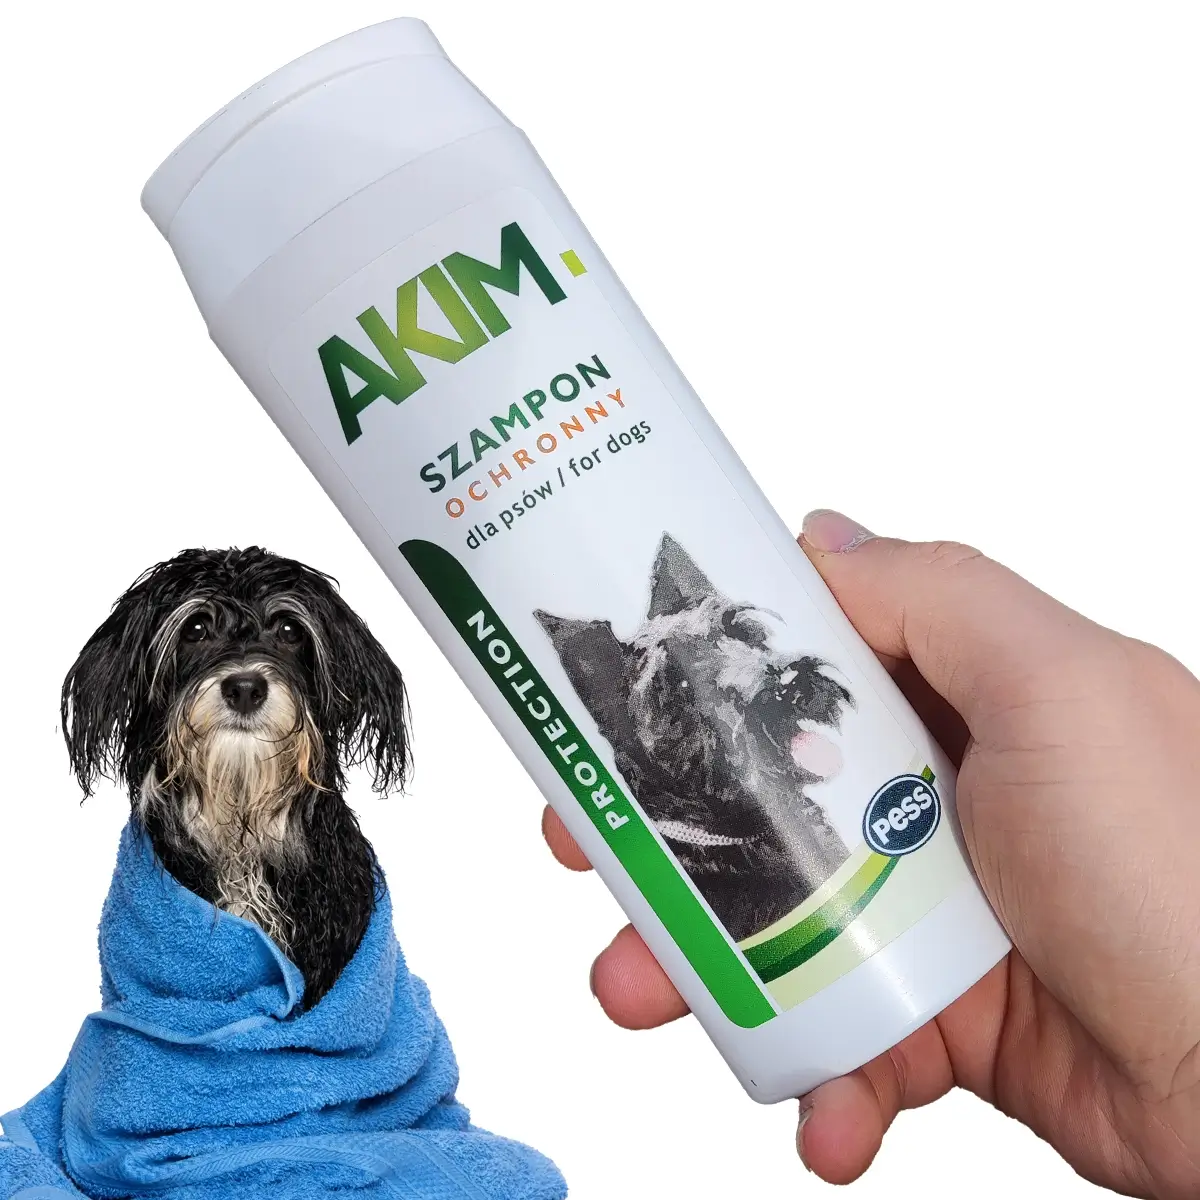 szampon przeciw pasożytom pies zakopane